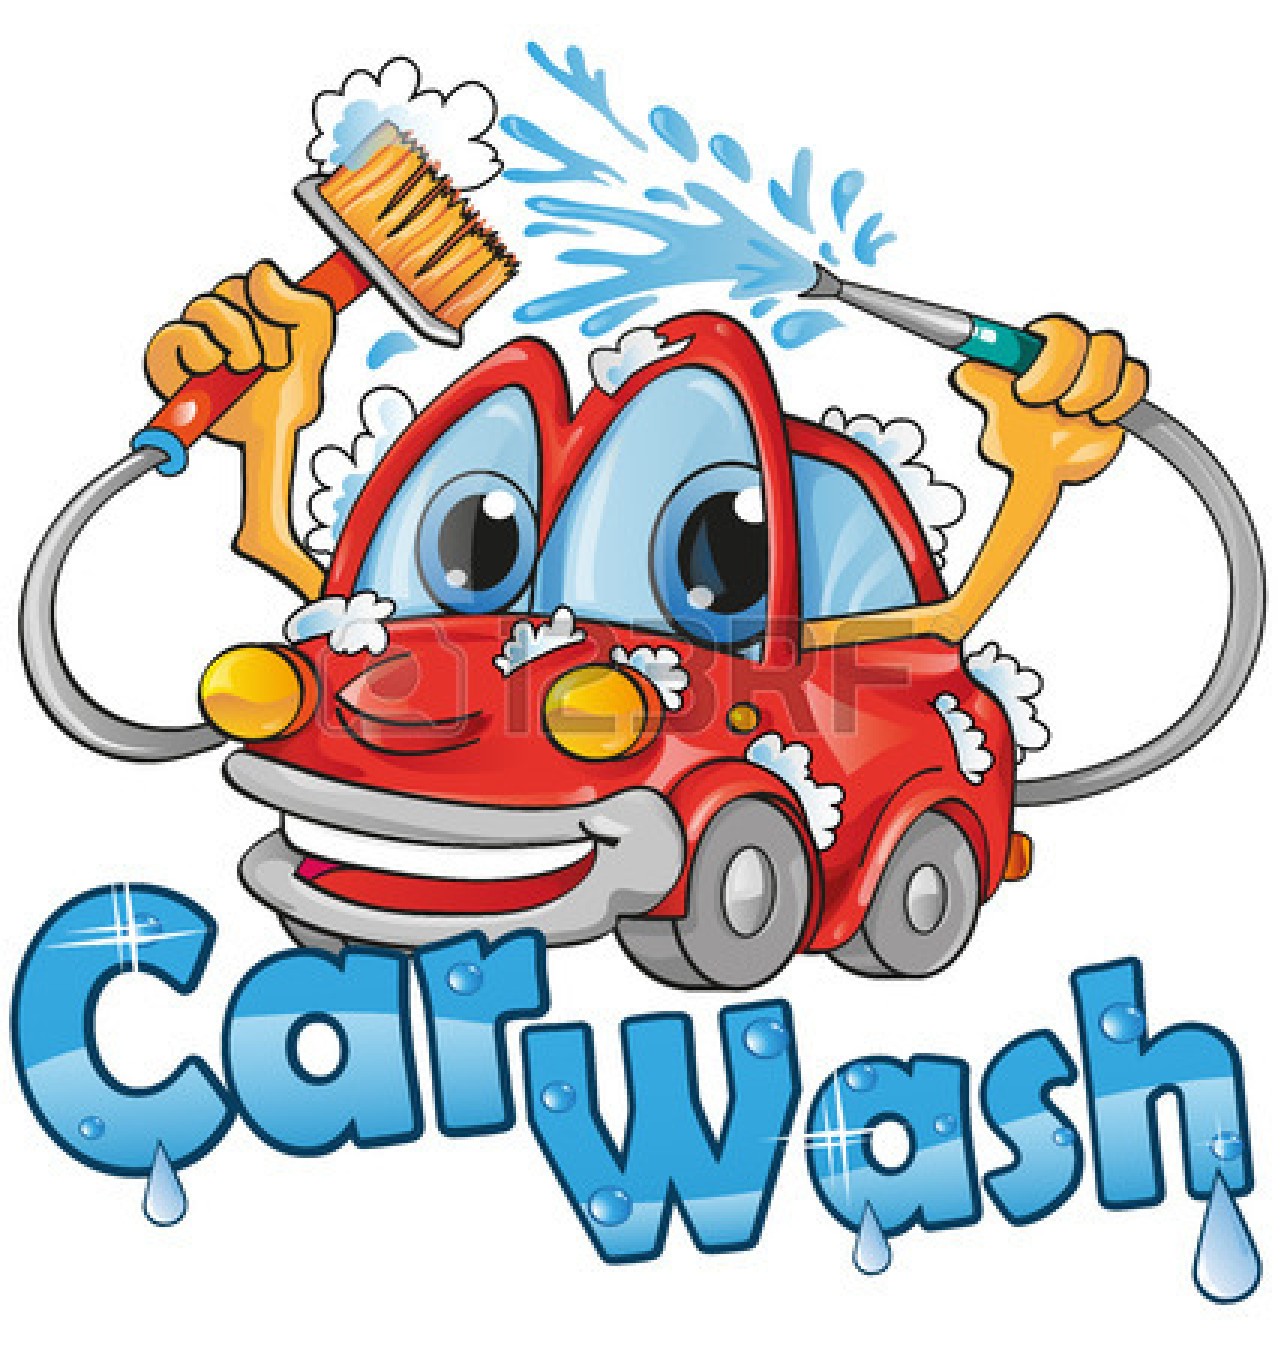 Car wash service - happy .